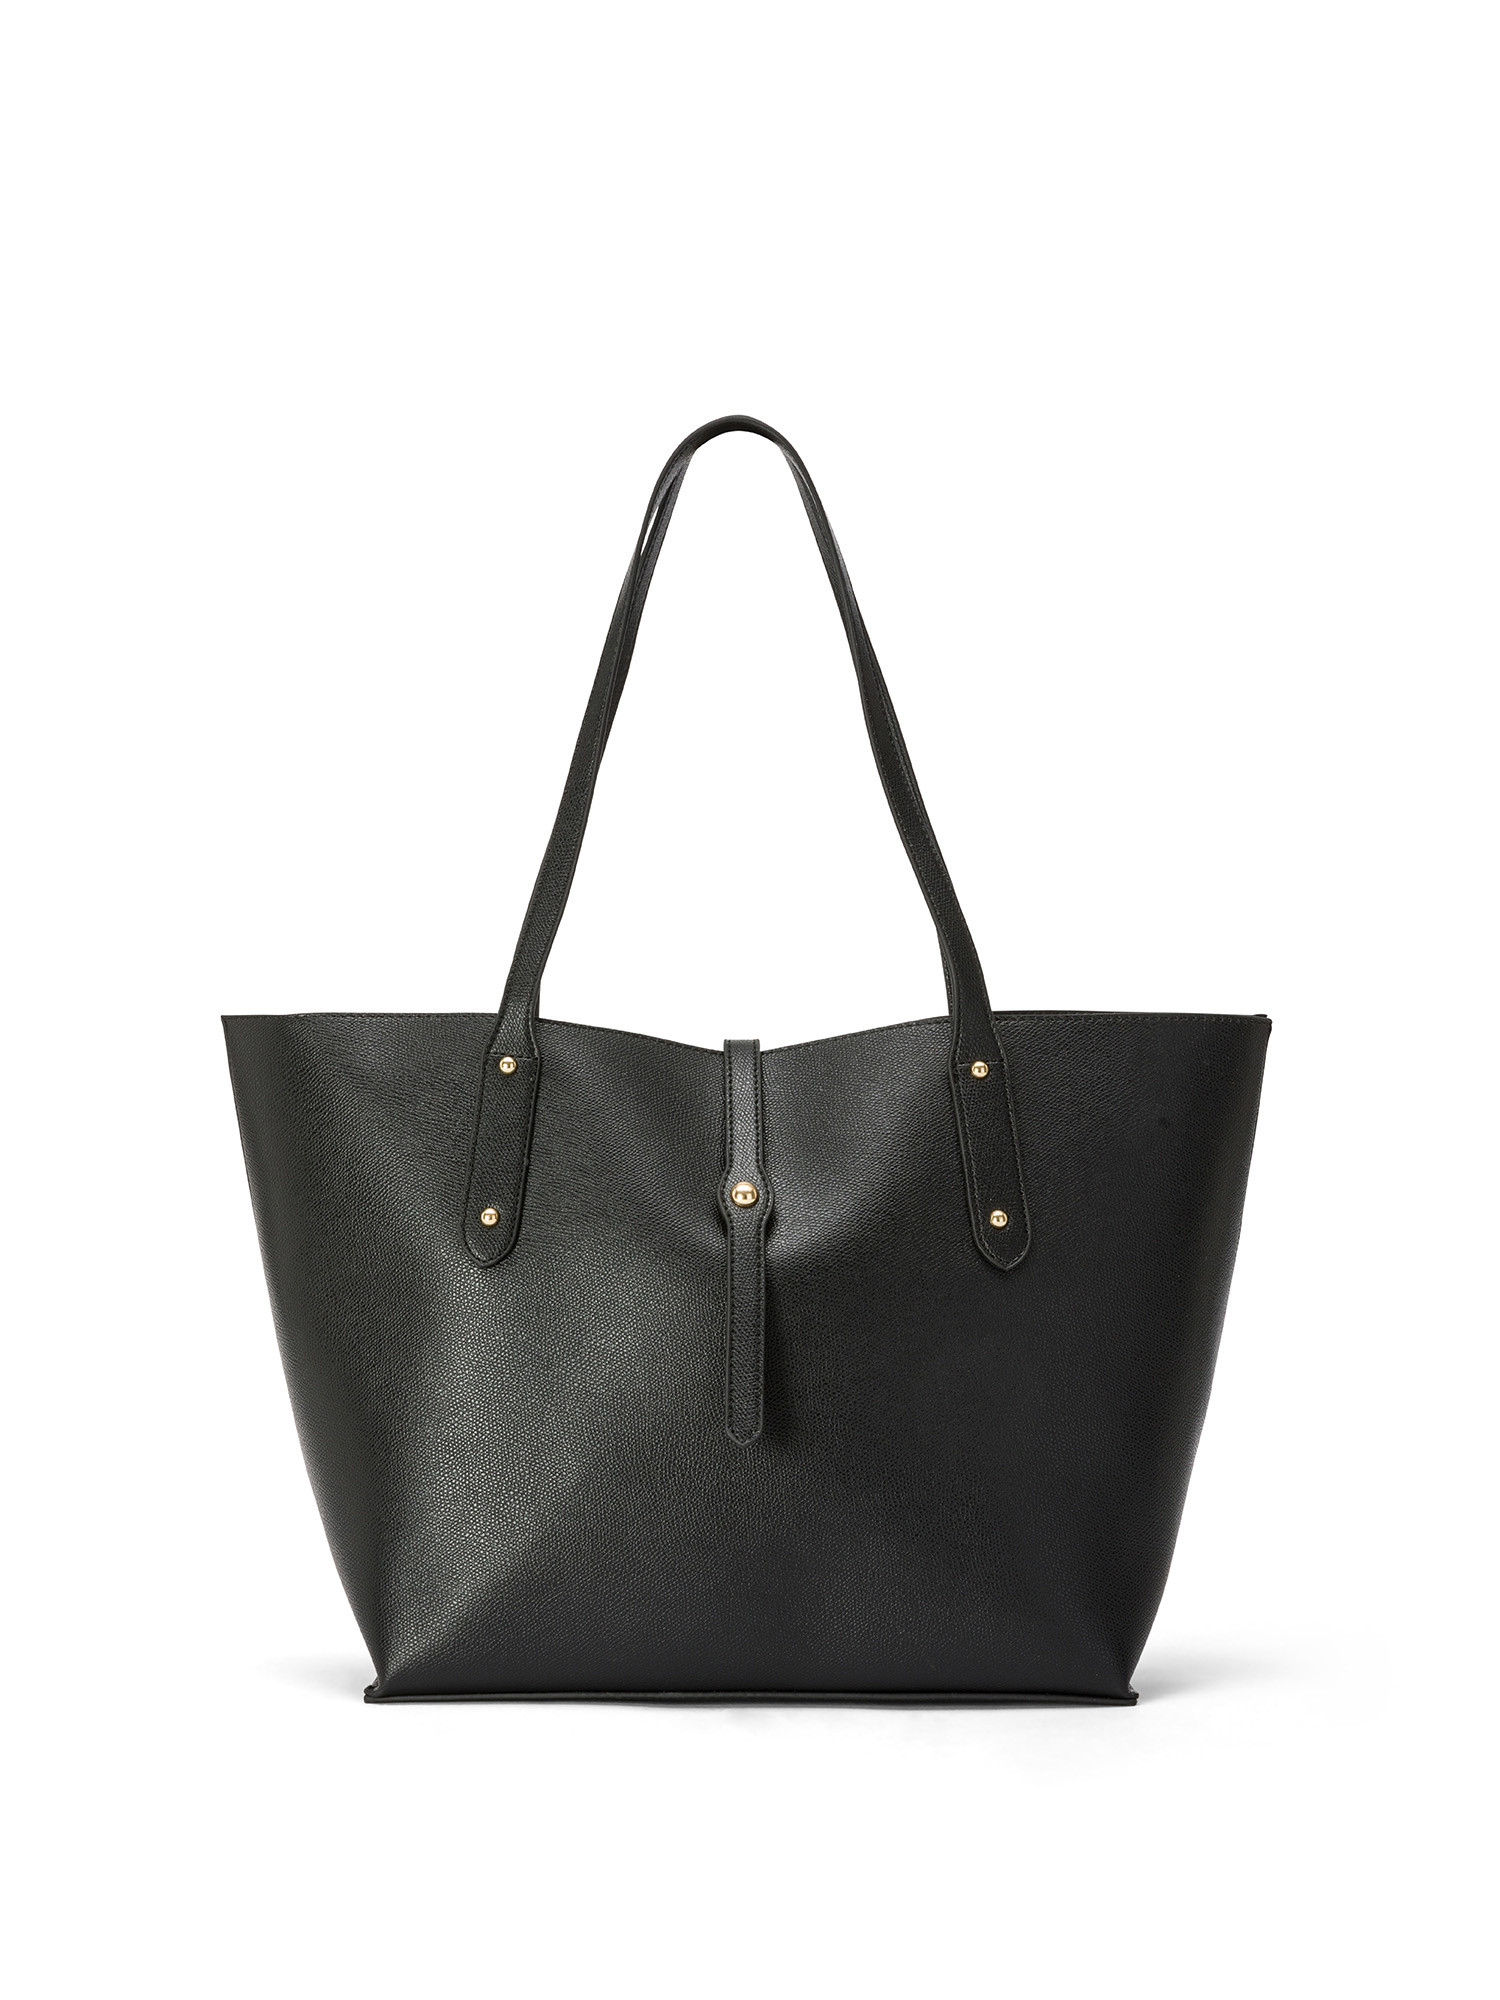 Koan - Shopping bag, Black, large image number 0